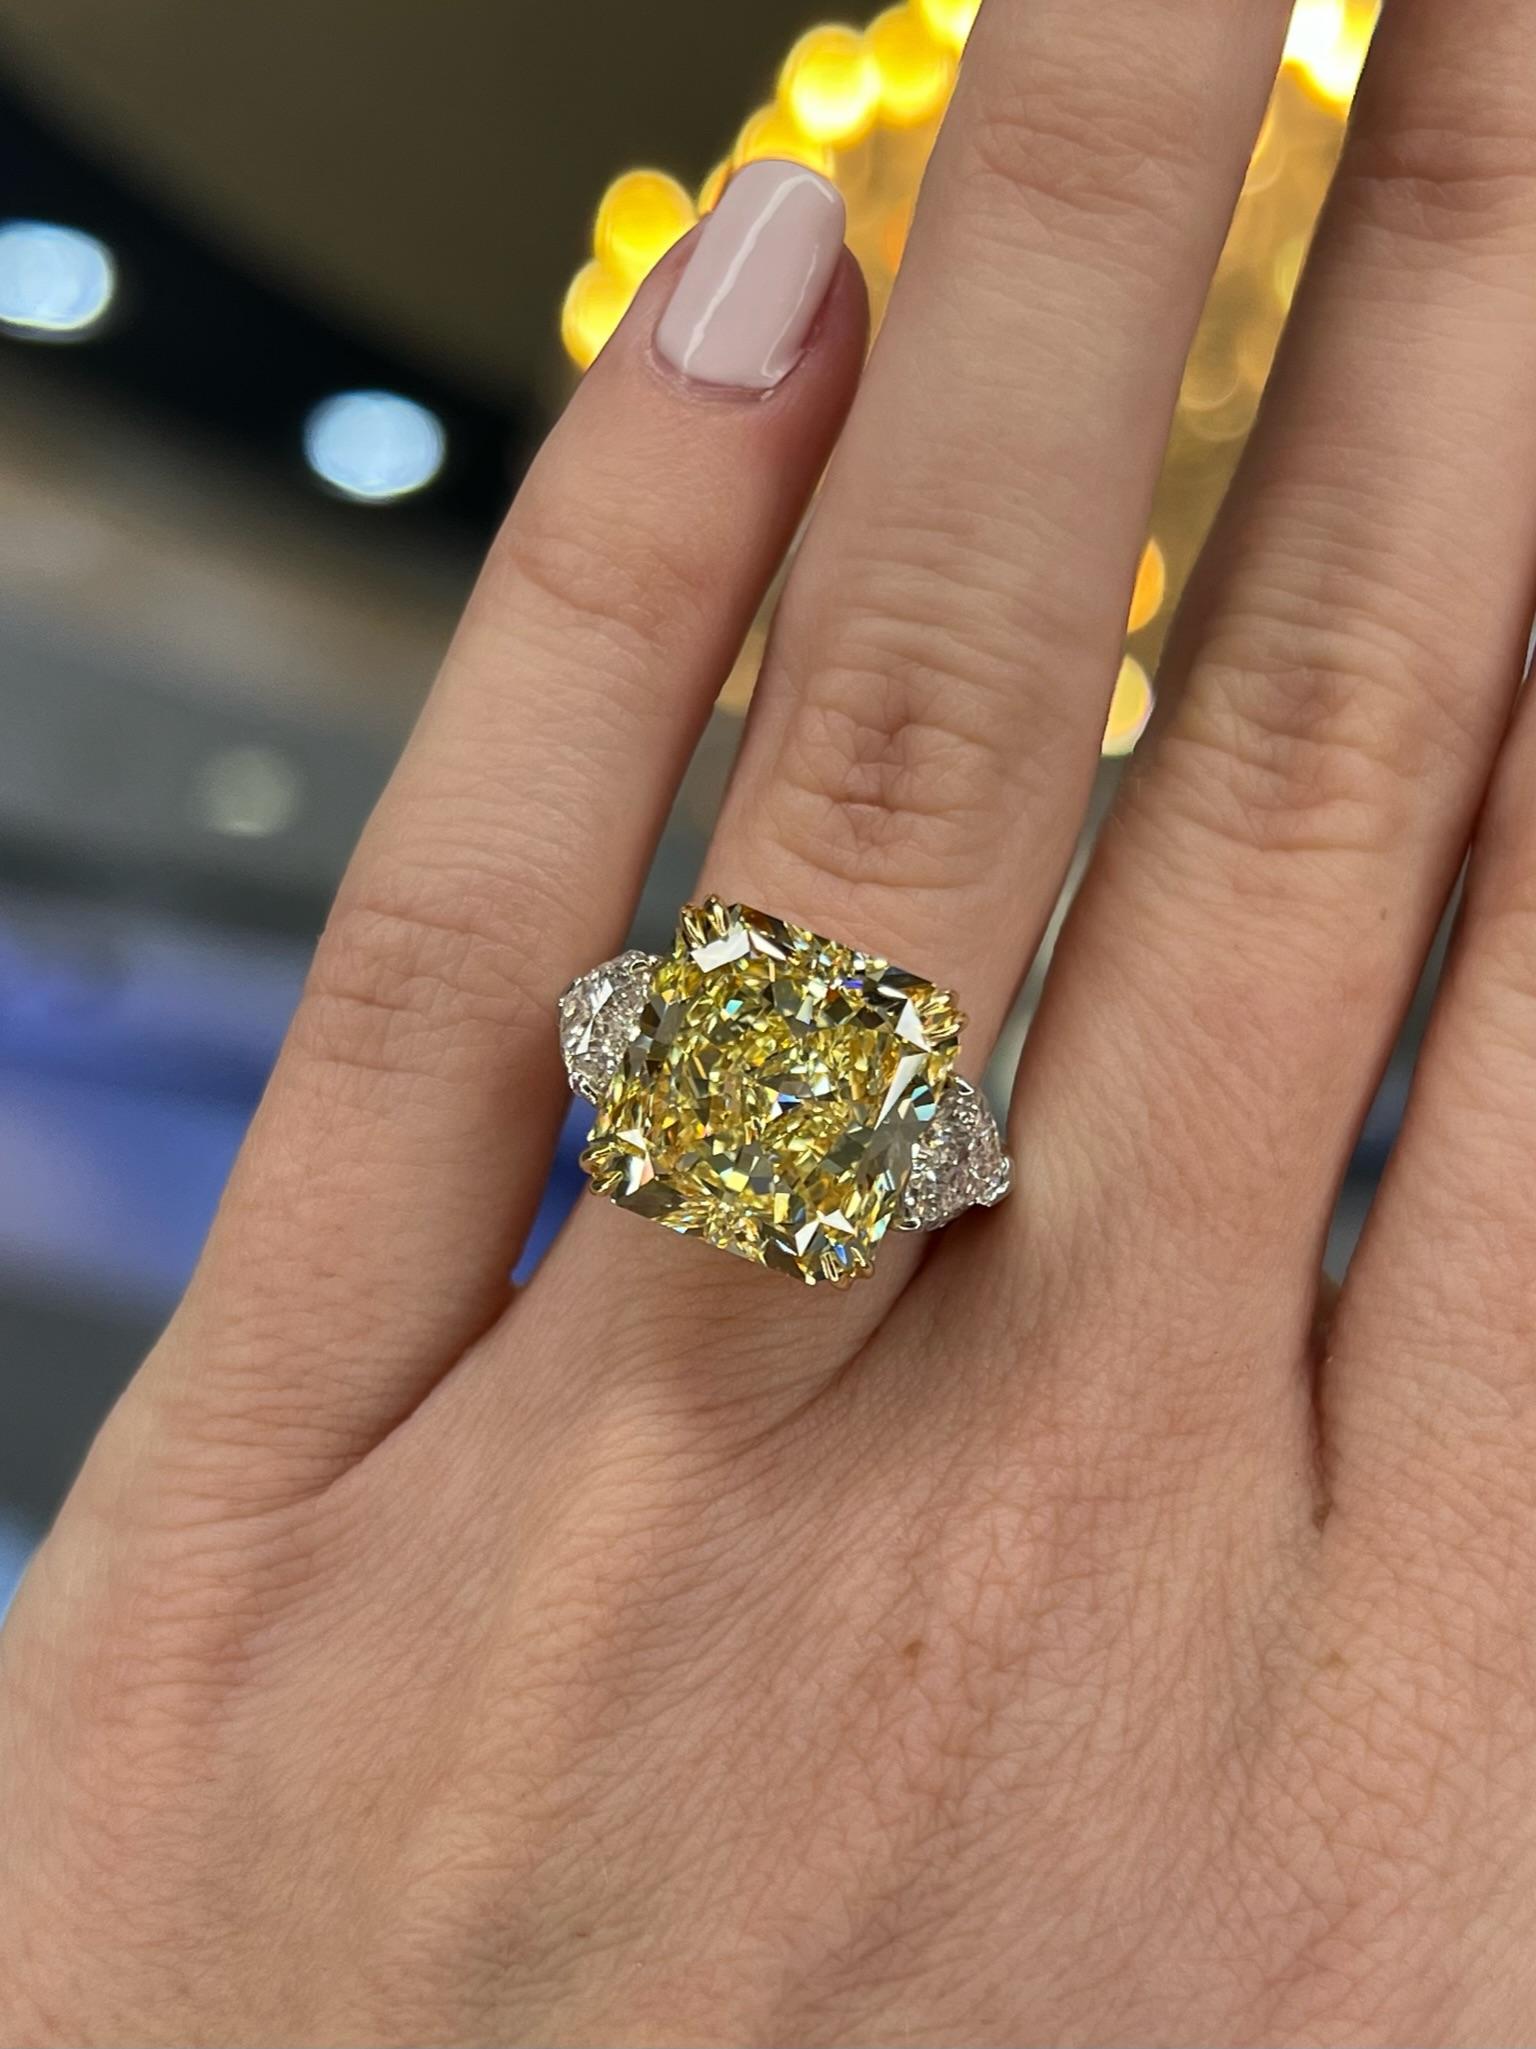 David Rosenberg 10.23 Radiant Fancy Yellow VVS1 GIA Diamond Engagement Ring For Sale 9